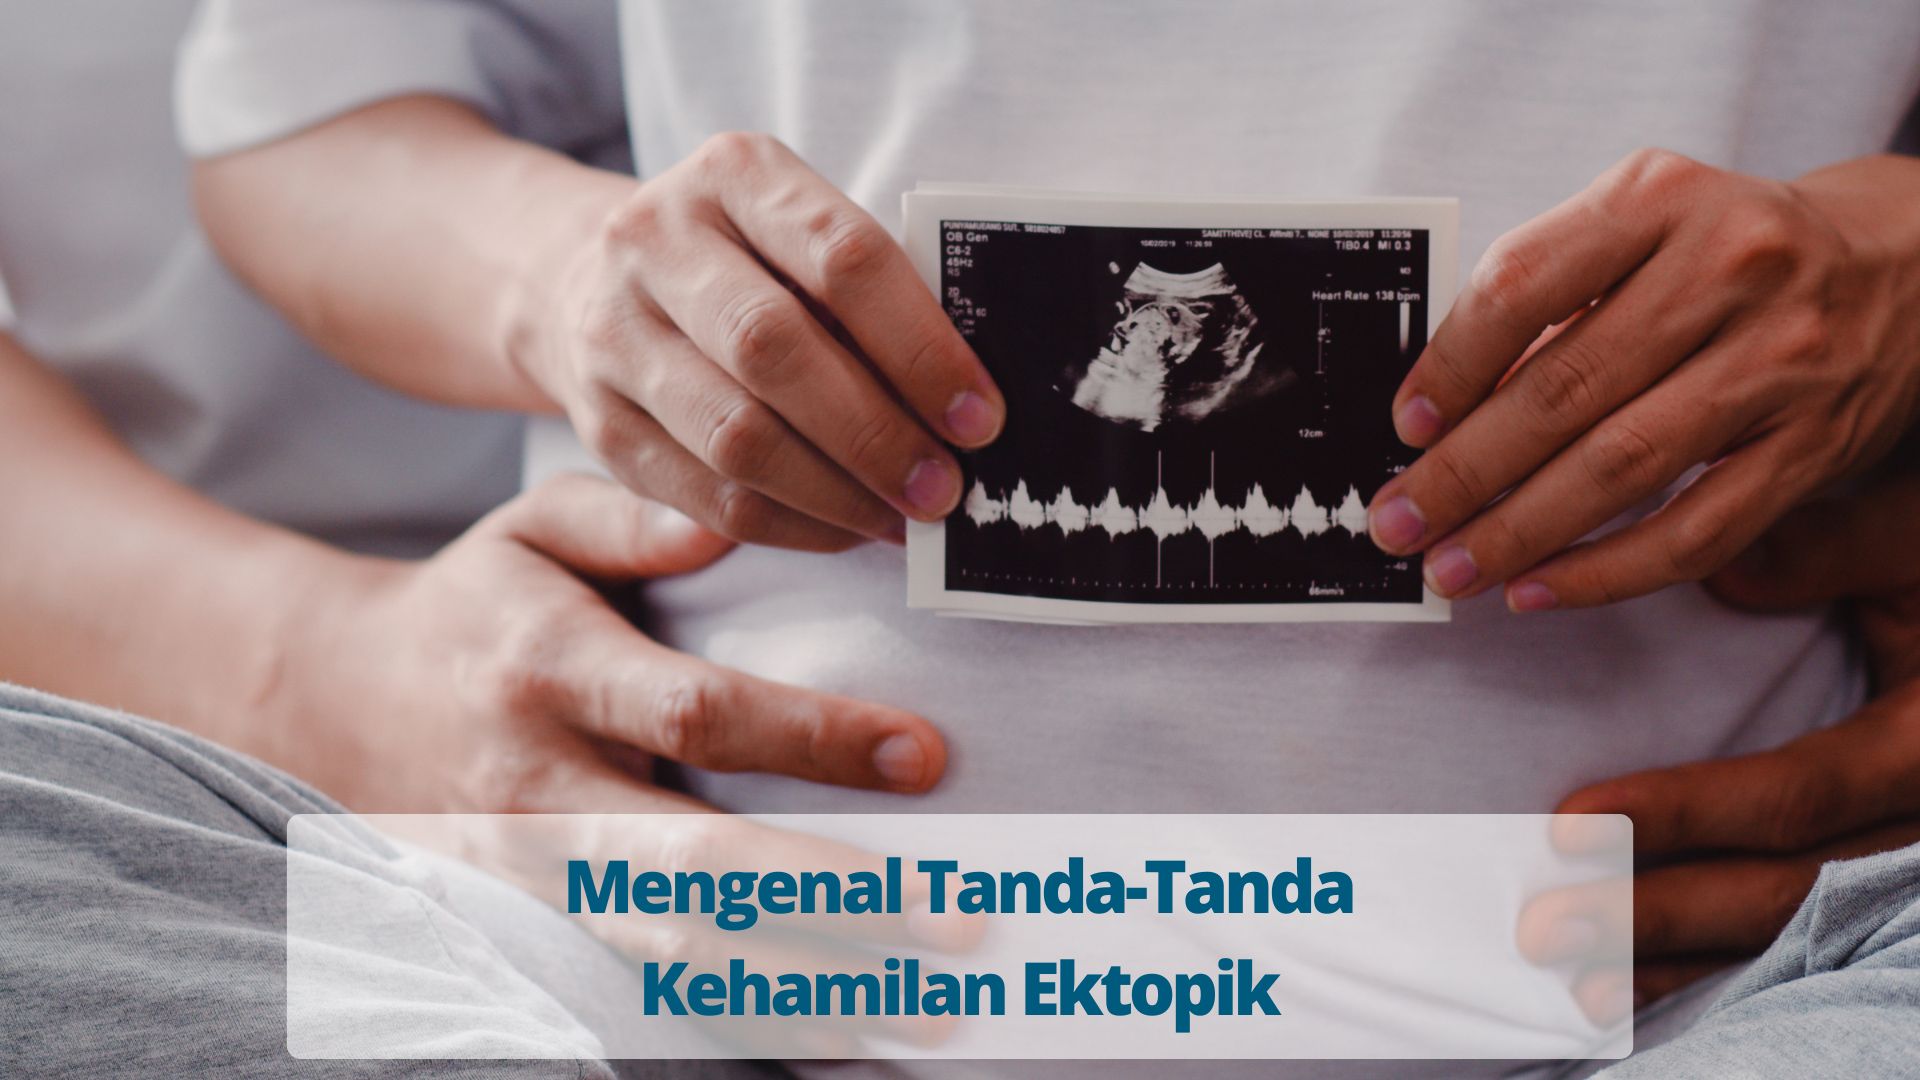 Mengenal Tanda-Tanda Kehamilan Ektopik